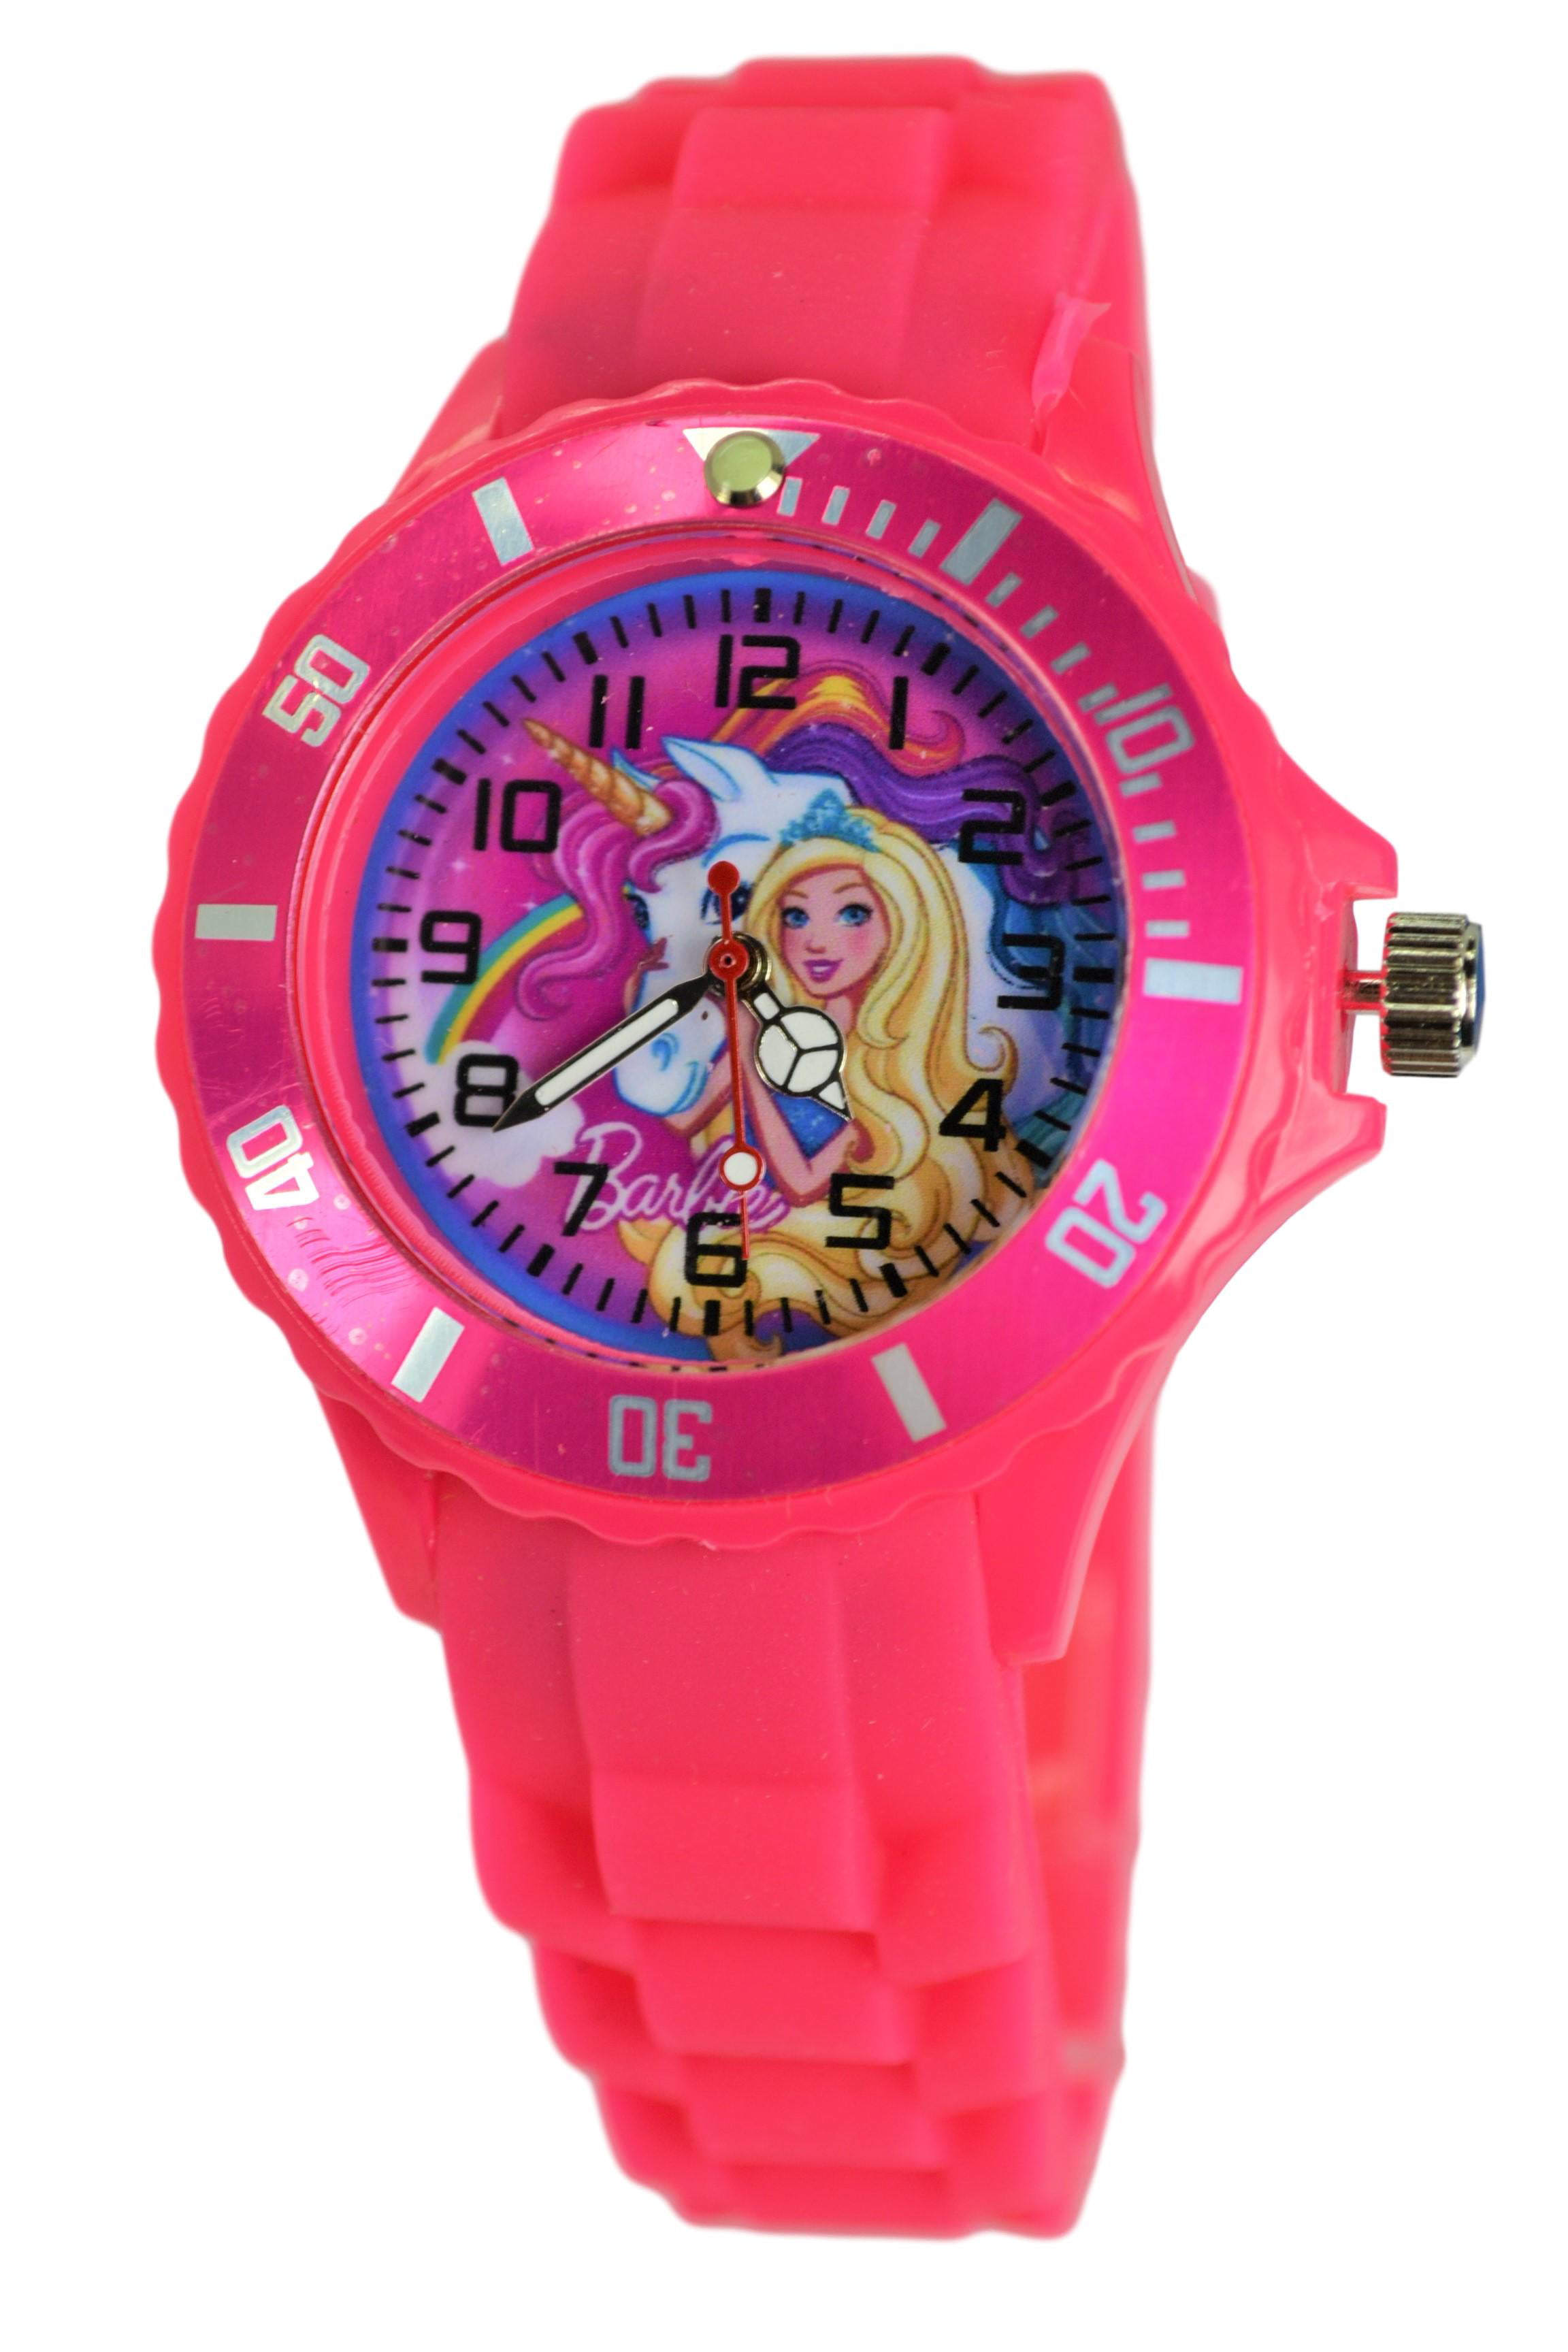 Mattel Barbie Unicorn Silicone Wrist Watch For Kids. Analog Watch